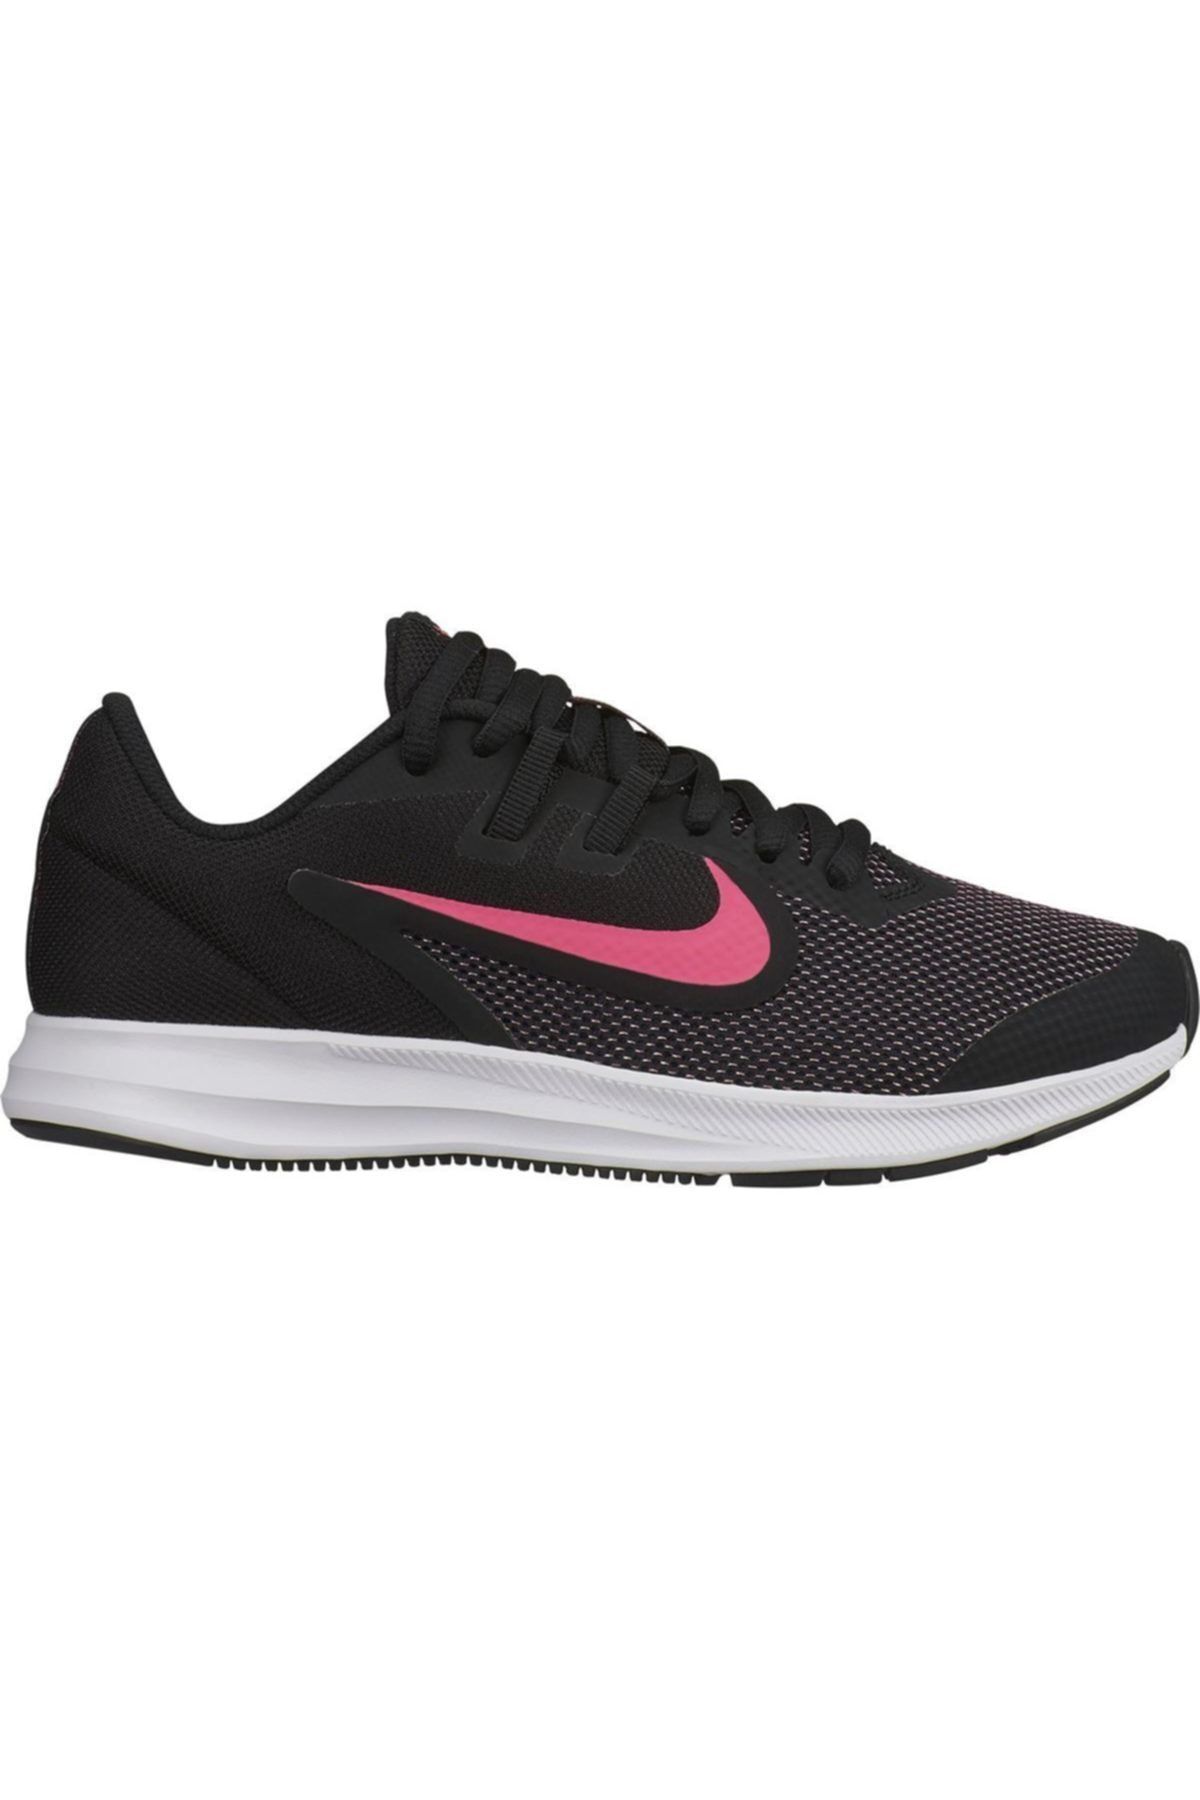 Nike Downshifter 9 gs Kadın Koşu Ayakkabısı Ar4135-003